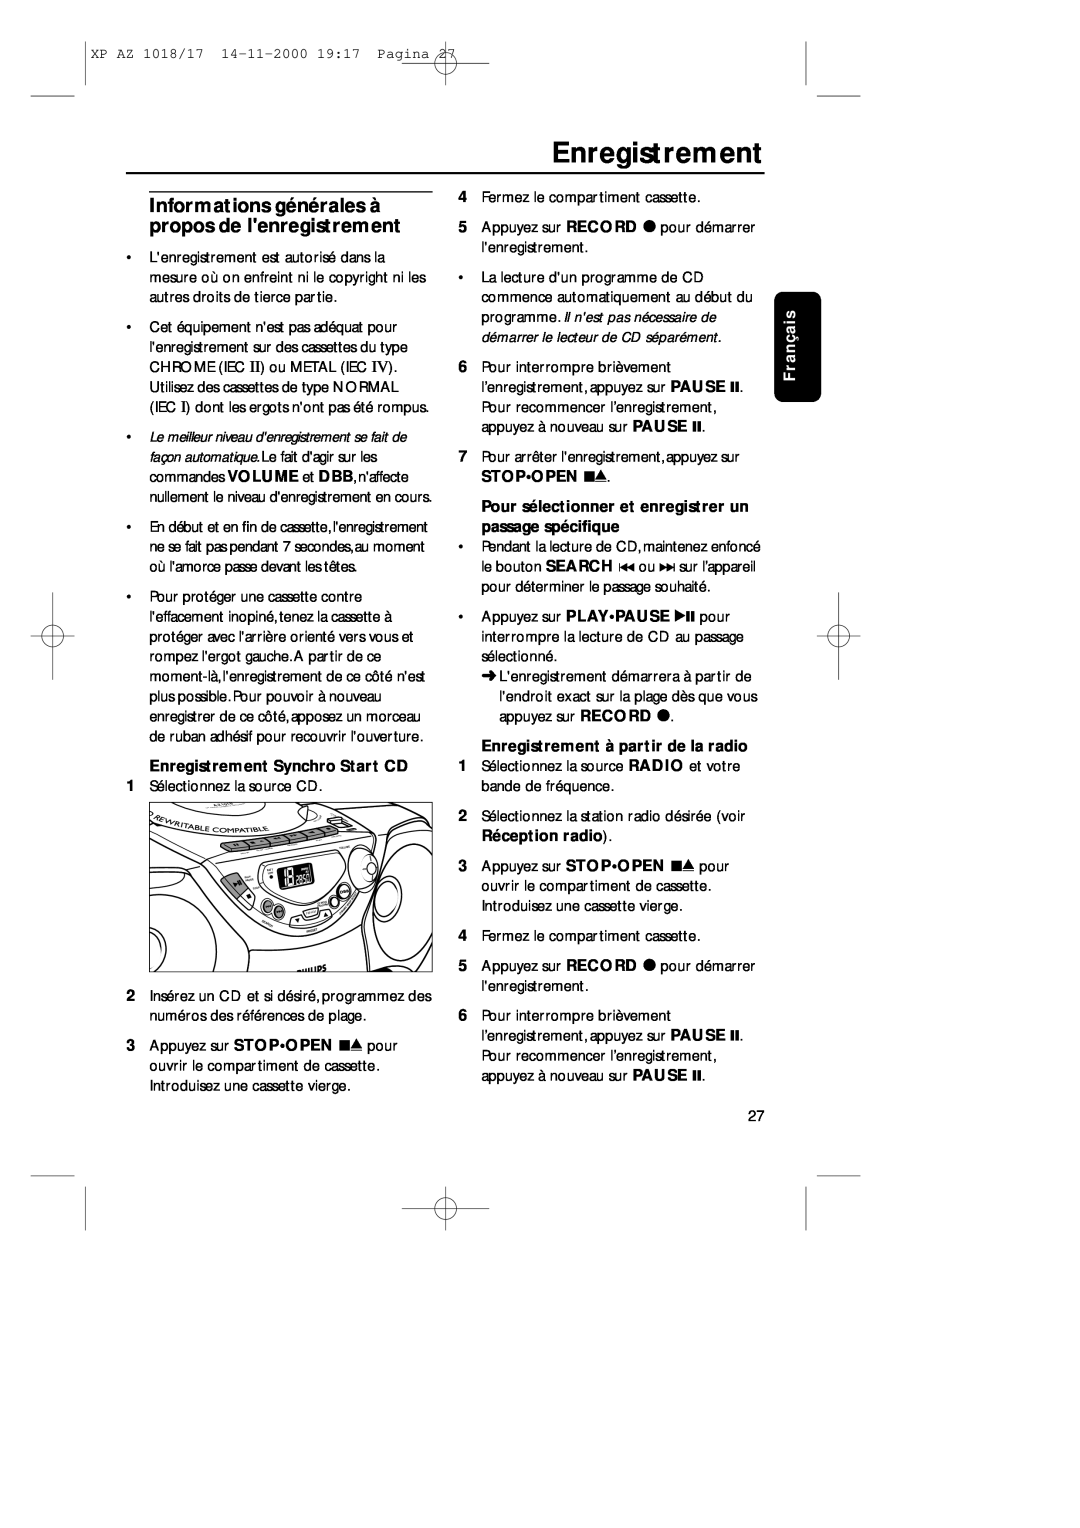 Philips 1018 manual Informations générales à propos de lenregistrement, Enregistrement Synchro Start CD, Français 